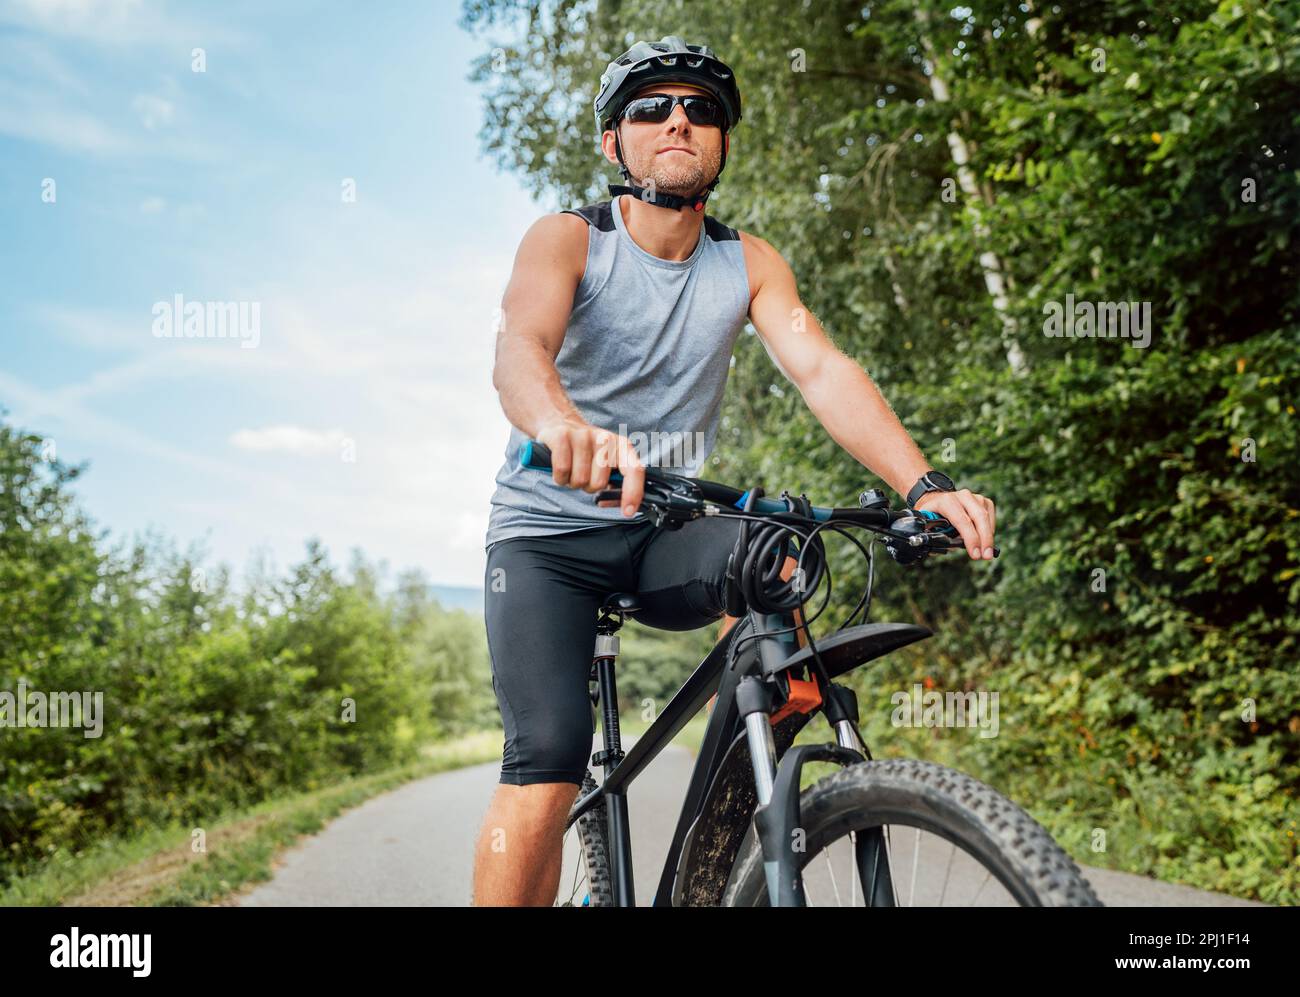 Portrait d'un heureux homme vêtu de vêtements de cyclisme, d'un casque et de lunettes de soleil sur un vélo sur la piste cyclable de l'extérieur de la ville. Concept sportif actif Banque D'Images